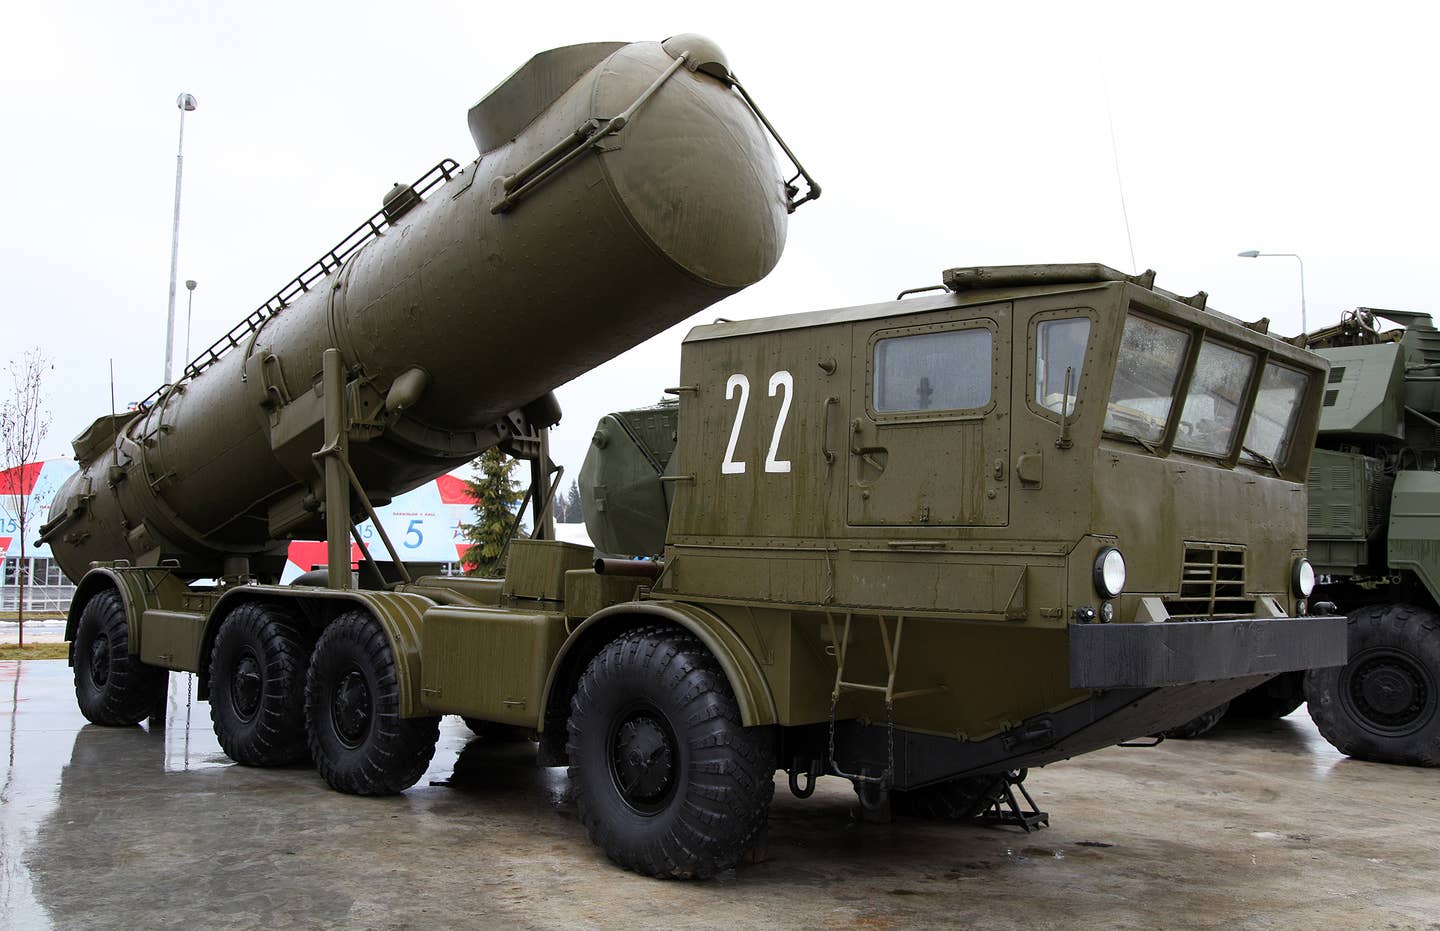 A transporter-erector-launcher for the Redut coastal defense missile system. <em>Vitaly V. Kuzmin</em>